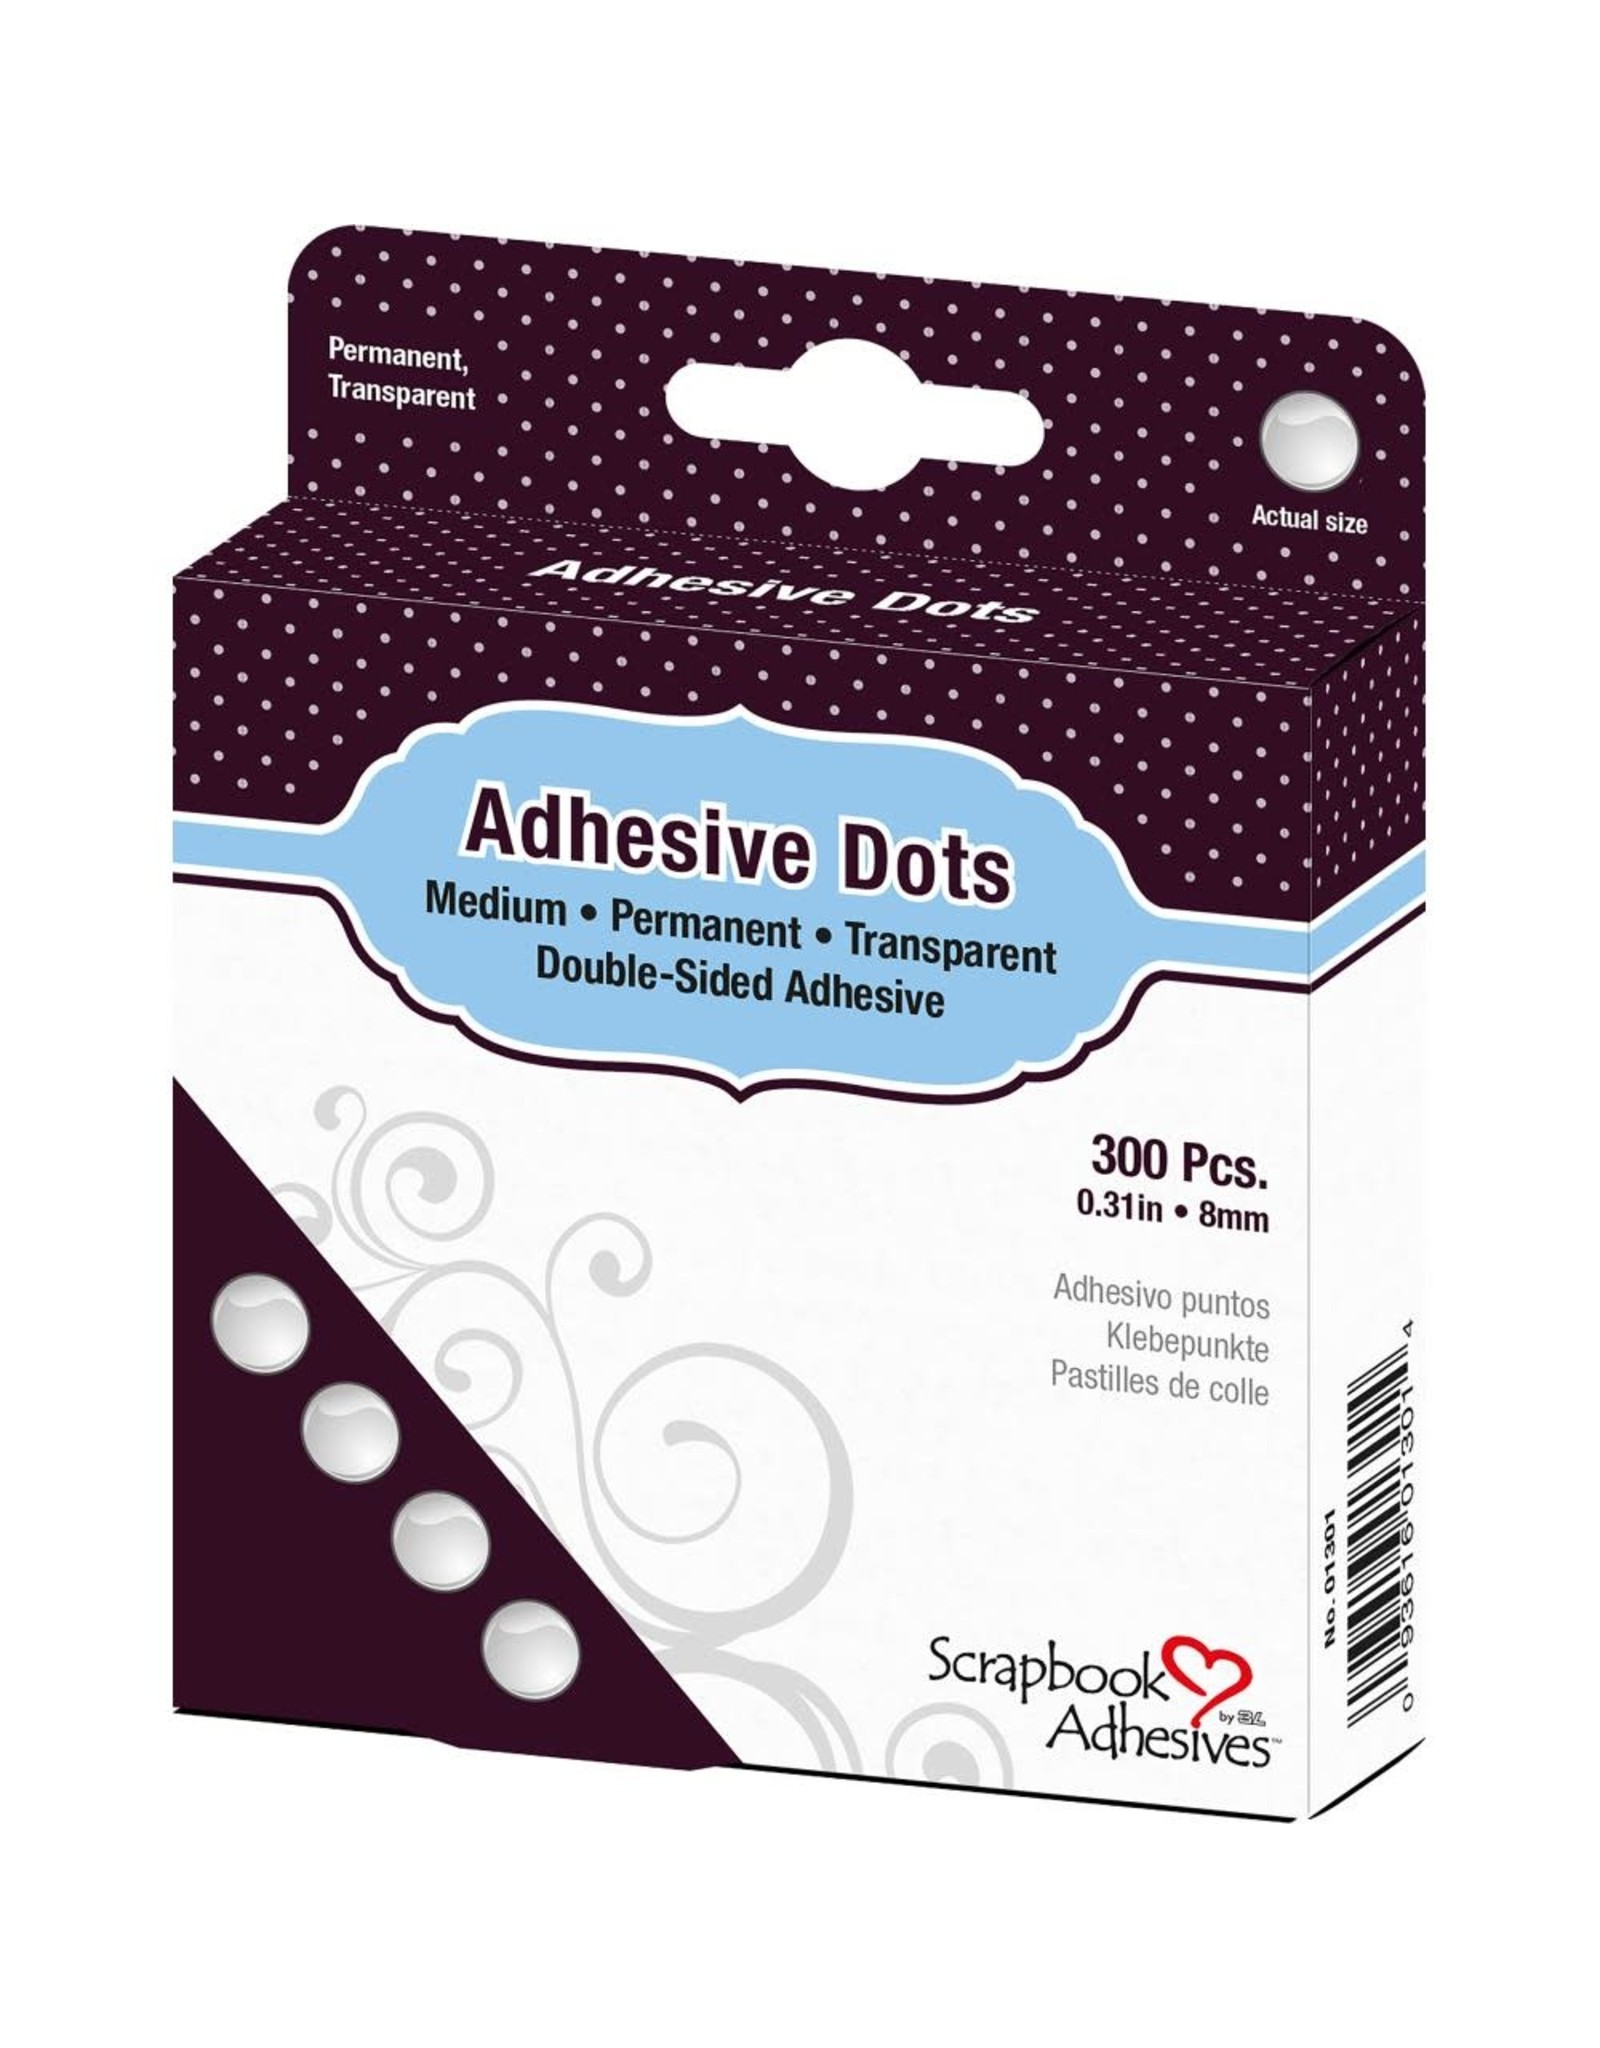 Scrapbook Adhesives Adhesive Dots Medium